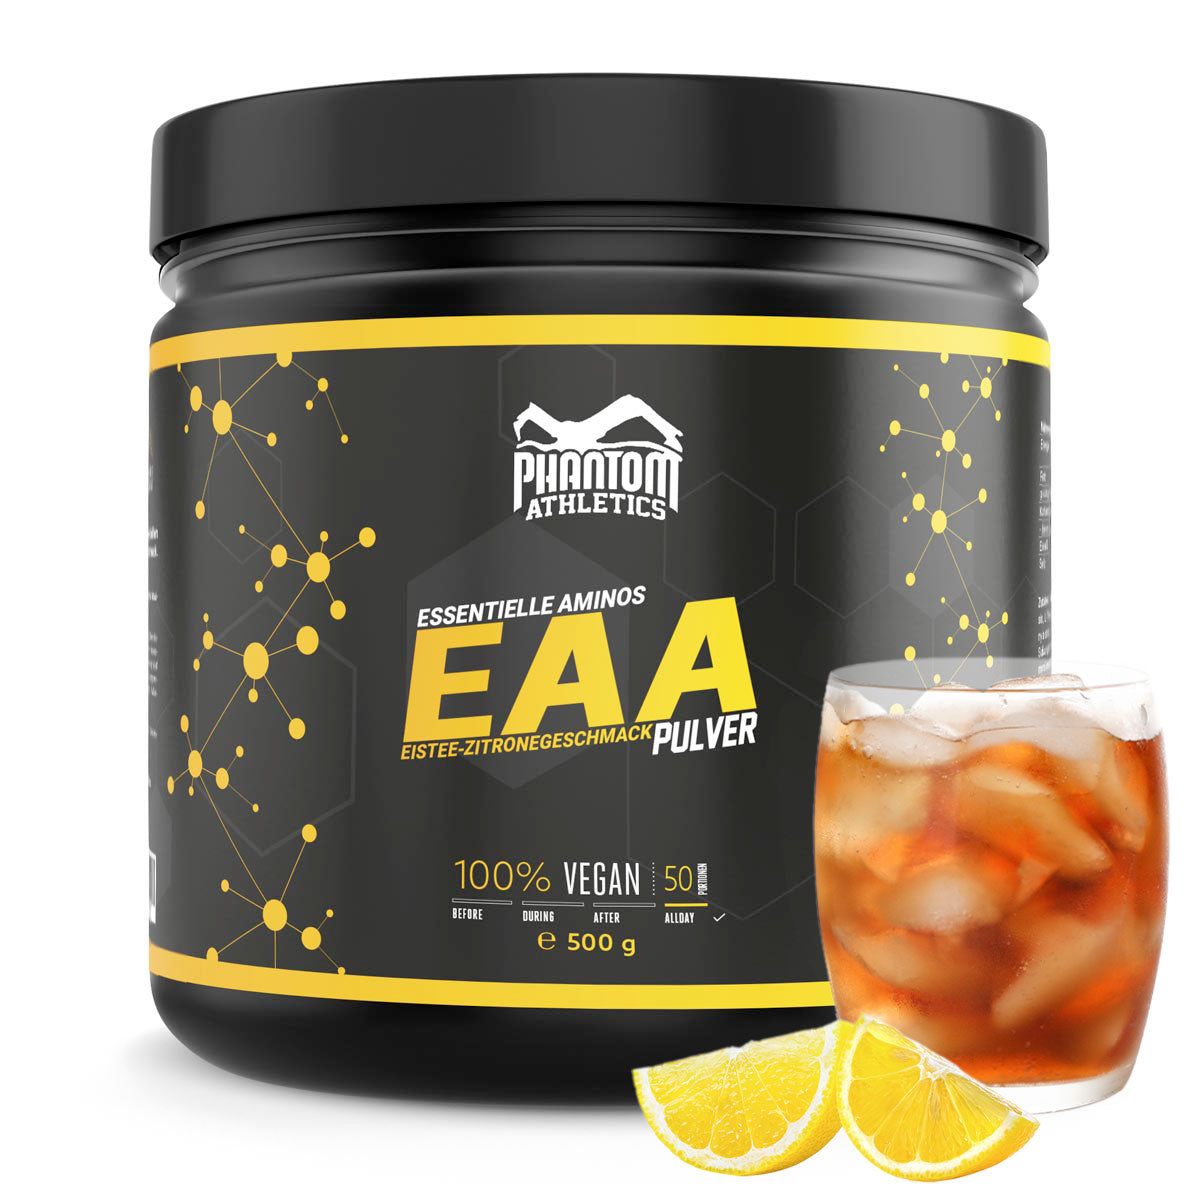 Phantom EAA - esenciální aminokyseliny s příchutí ledového čaje a citronu. Pro optimální péči v bojových uměních.